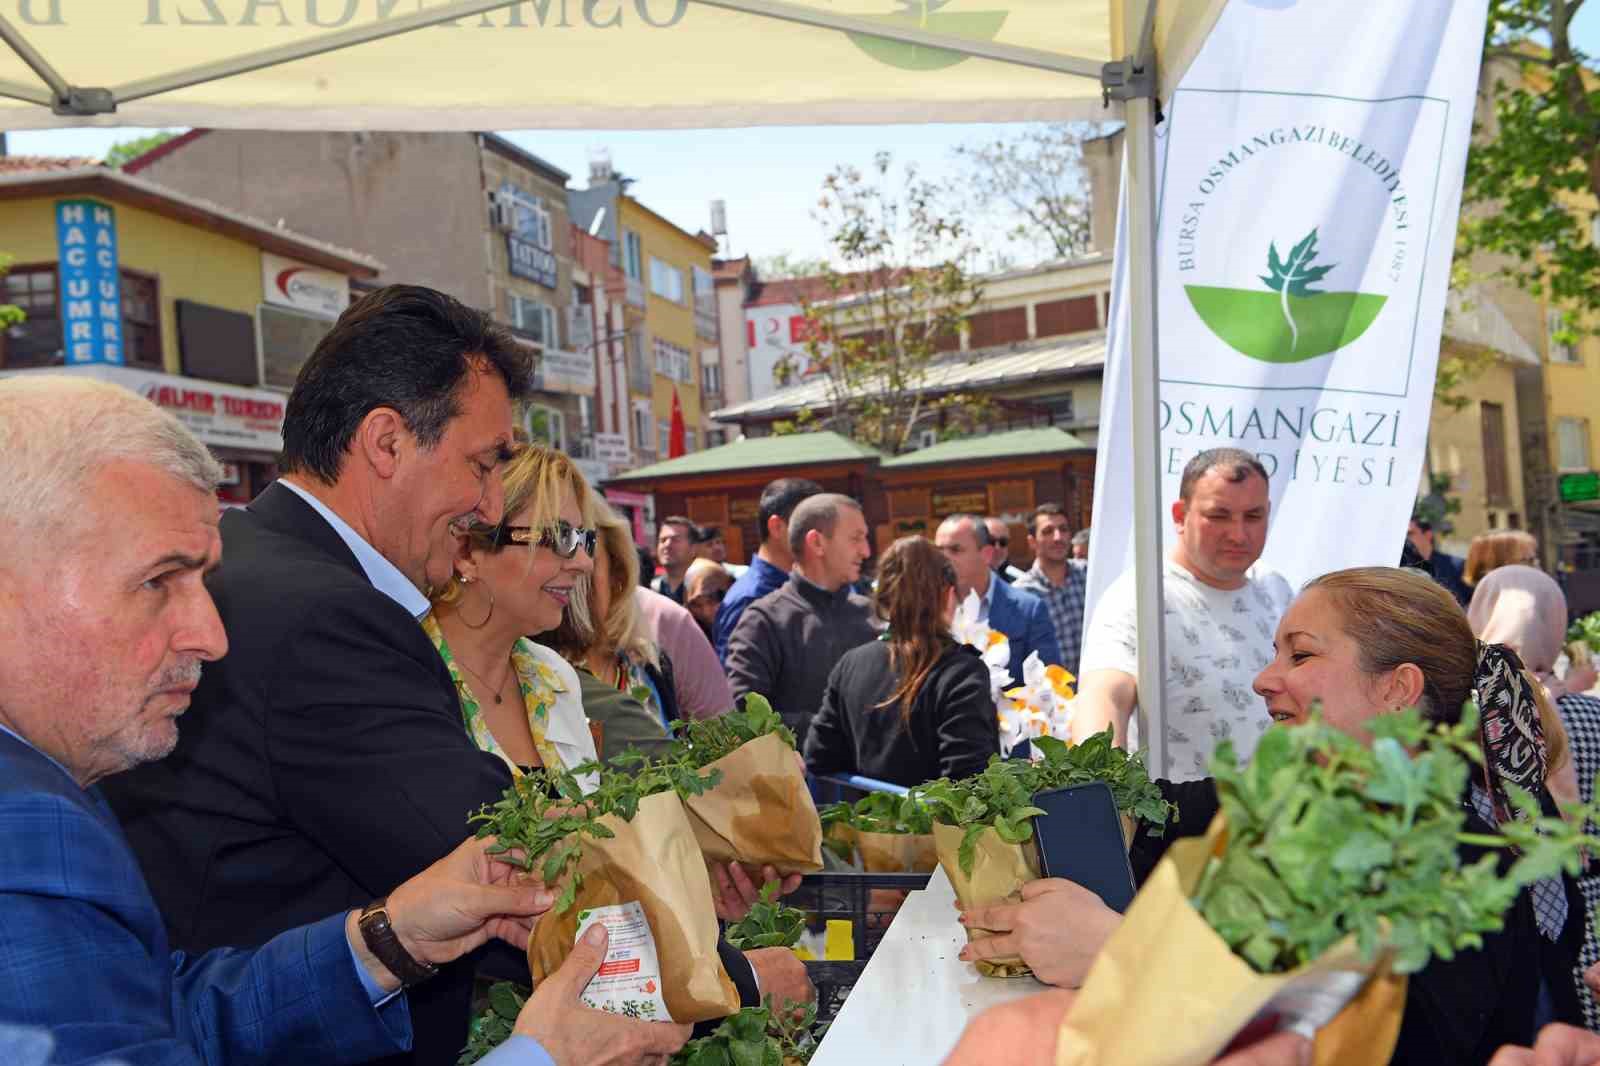 Osmangazi Belediyesi 1 milyon sebze fidesi dağıttı